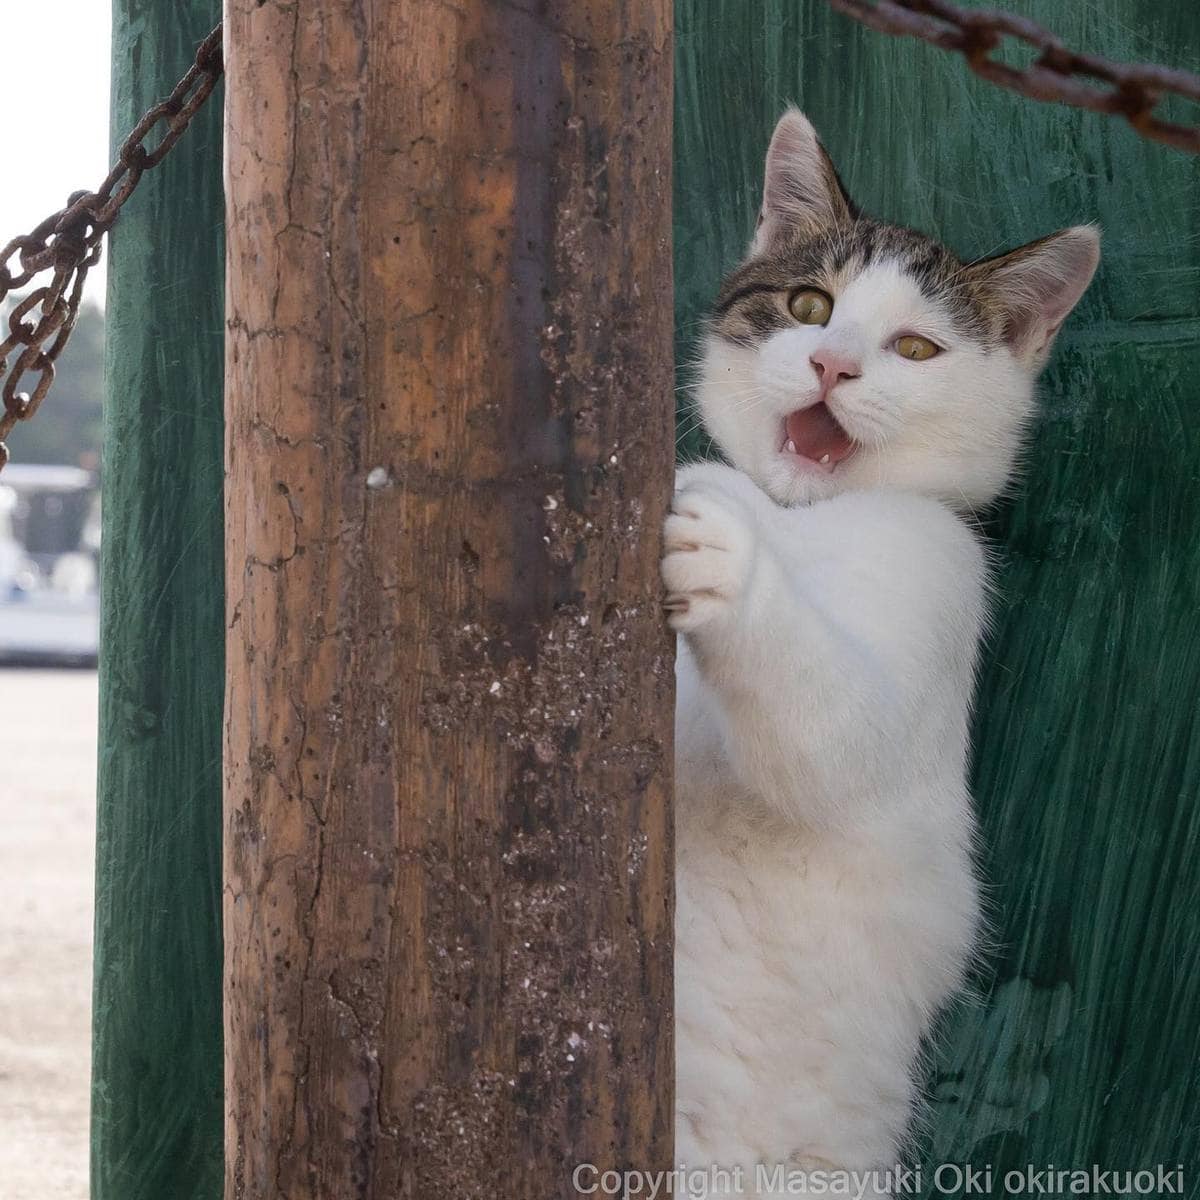 20 снимков уличных котов от японского фотографа, который как никто умеет запечатлевать харизму этих бродяг 71